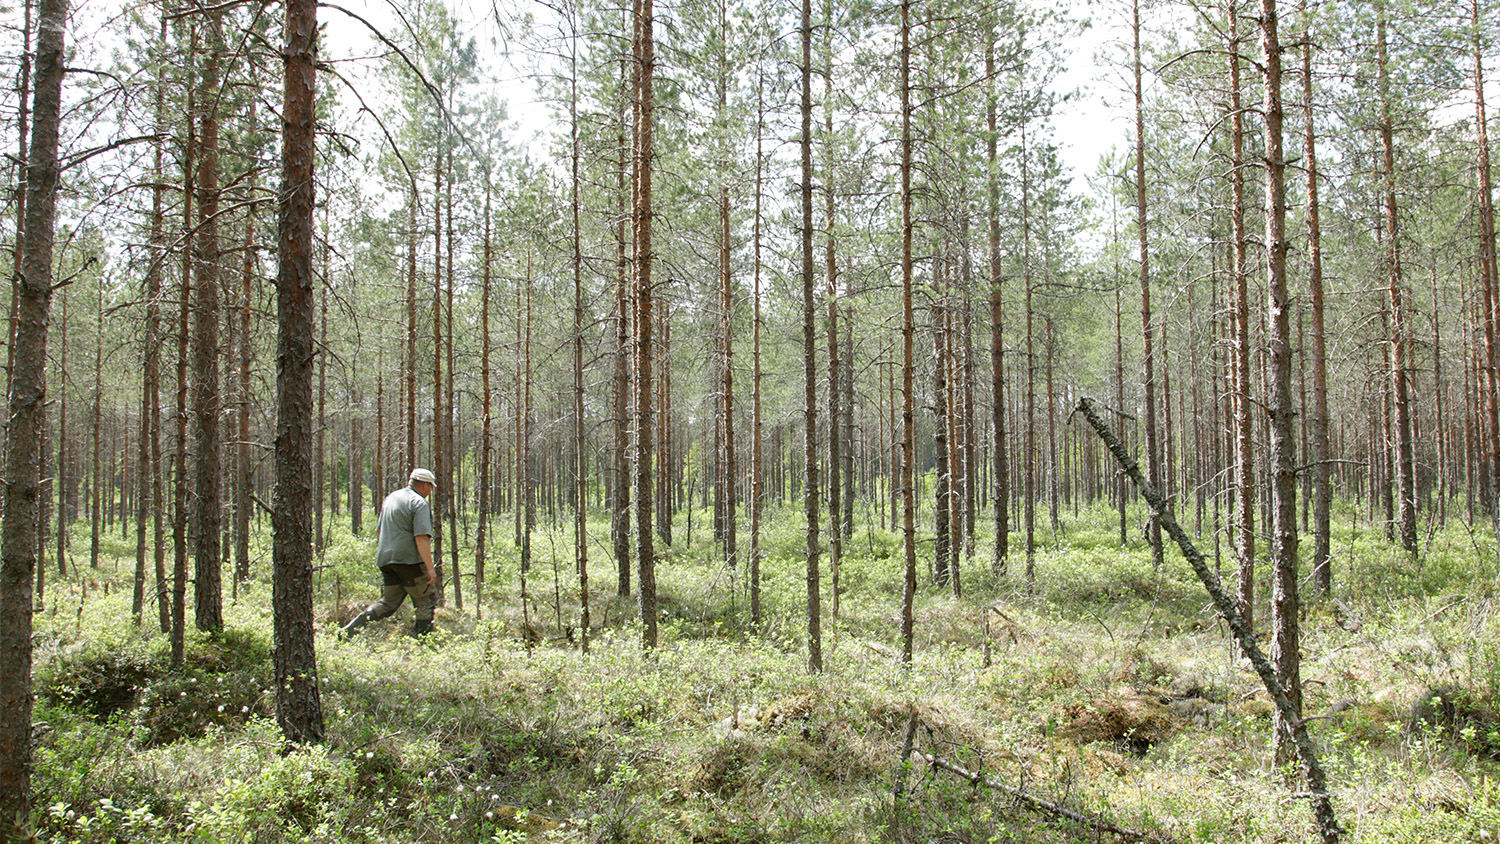 Wyjątkowy projekt partnerski: odtwarzanie fińskich terenów bagiennych